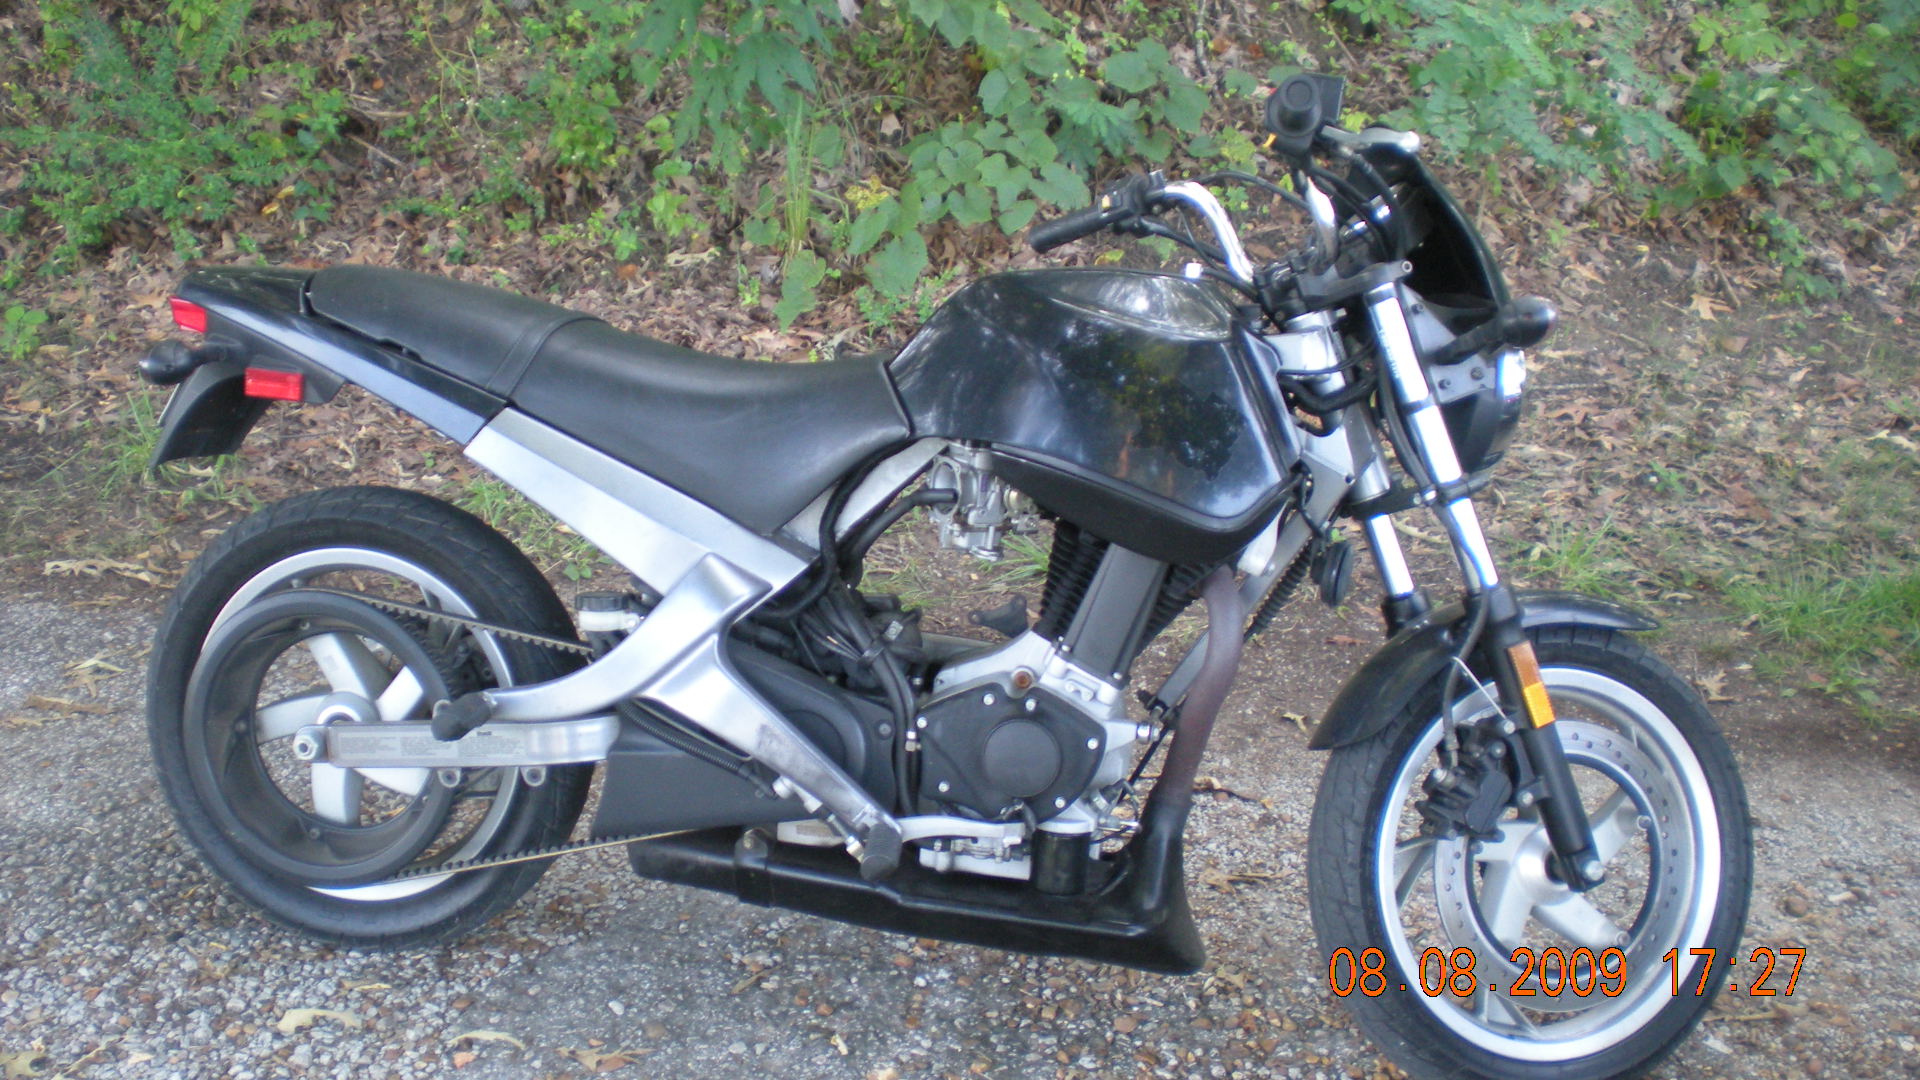 01 500cc buell blast $1700 obo or trade - Sportbikes.